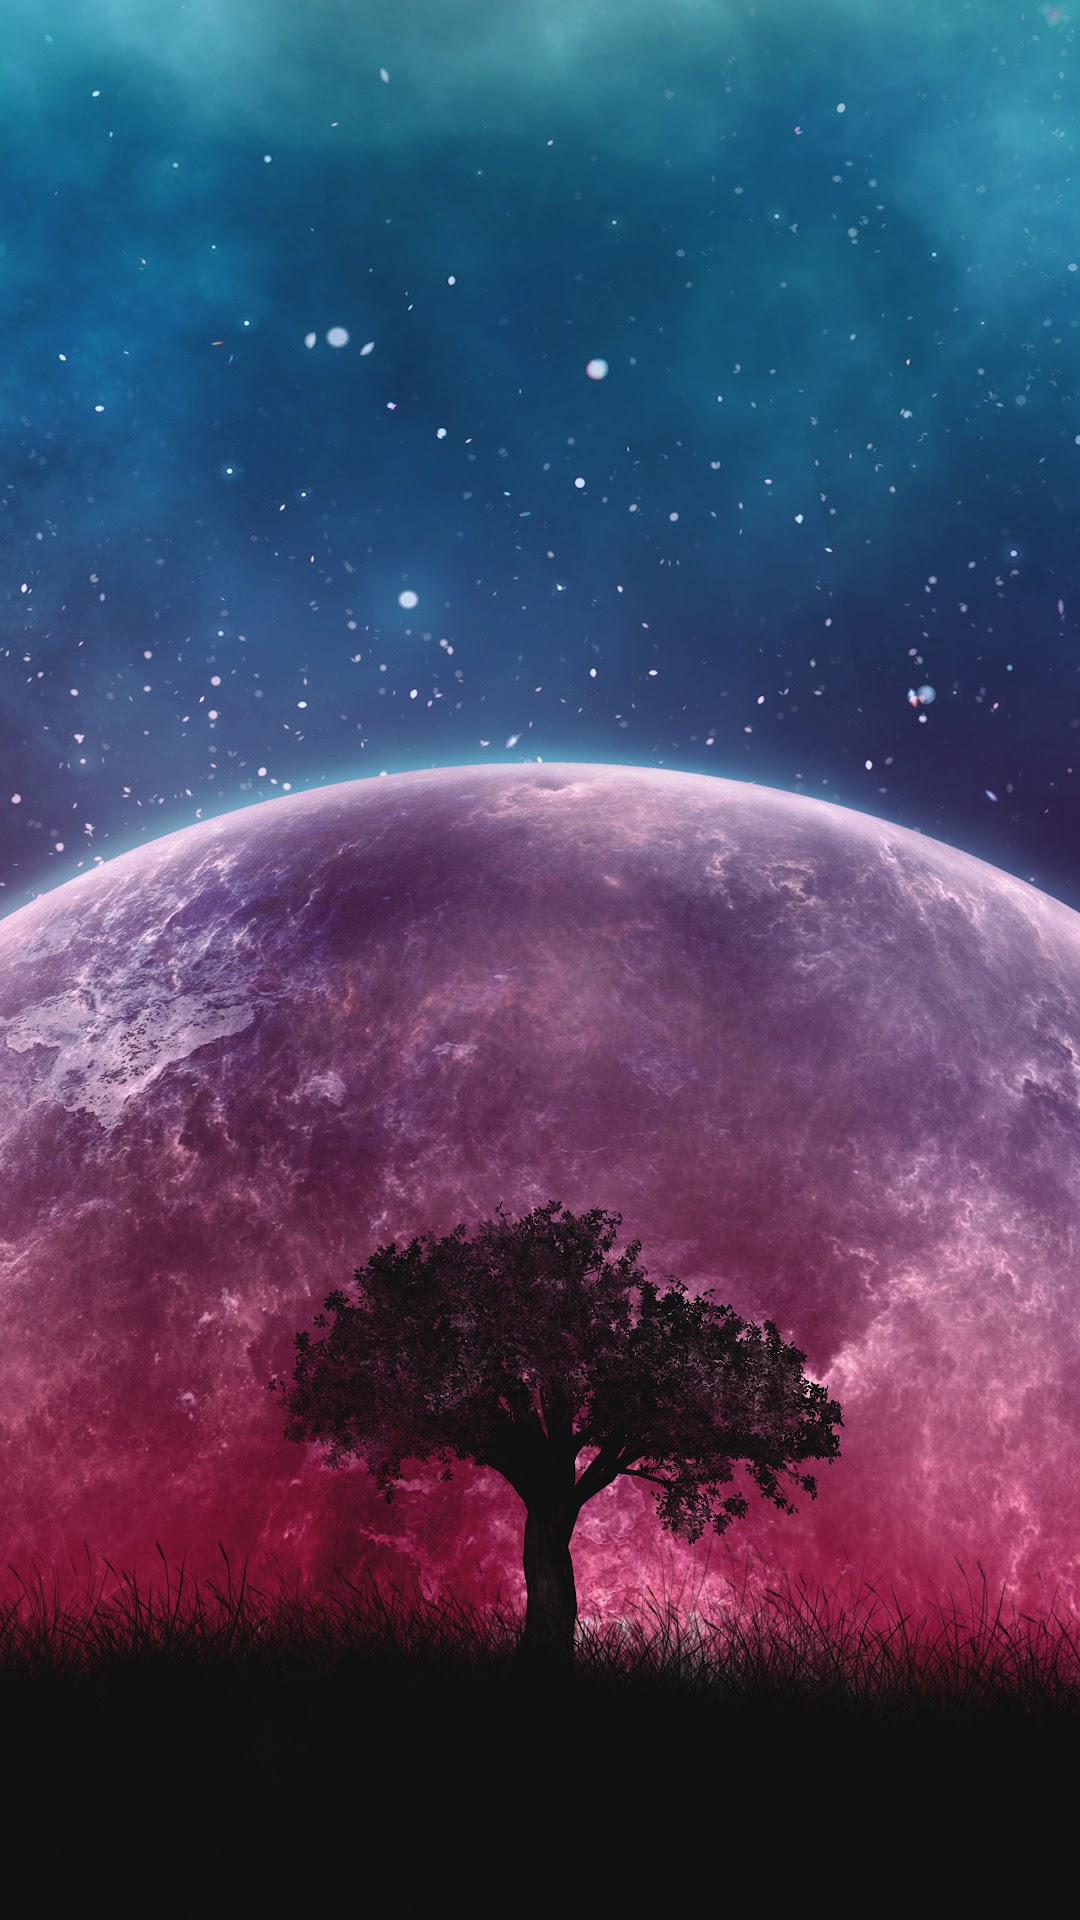 Moon Night Sky Stars Landscape Scenery 8k Wallpaper 189